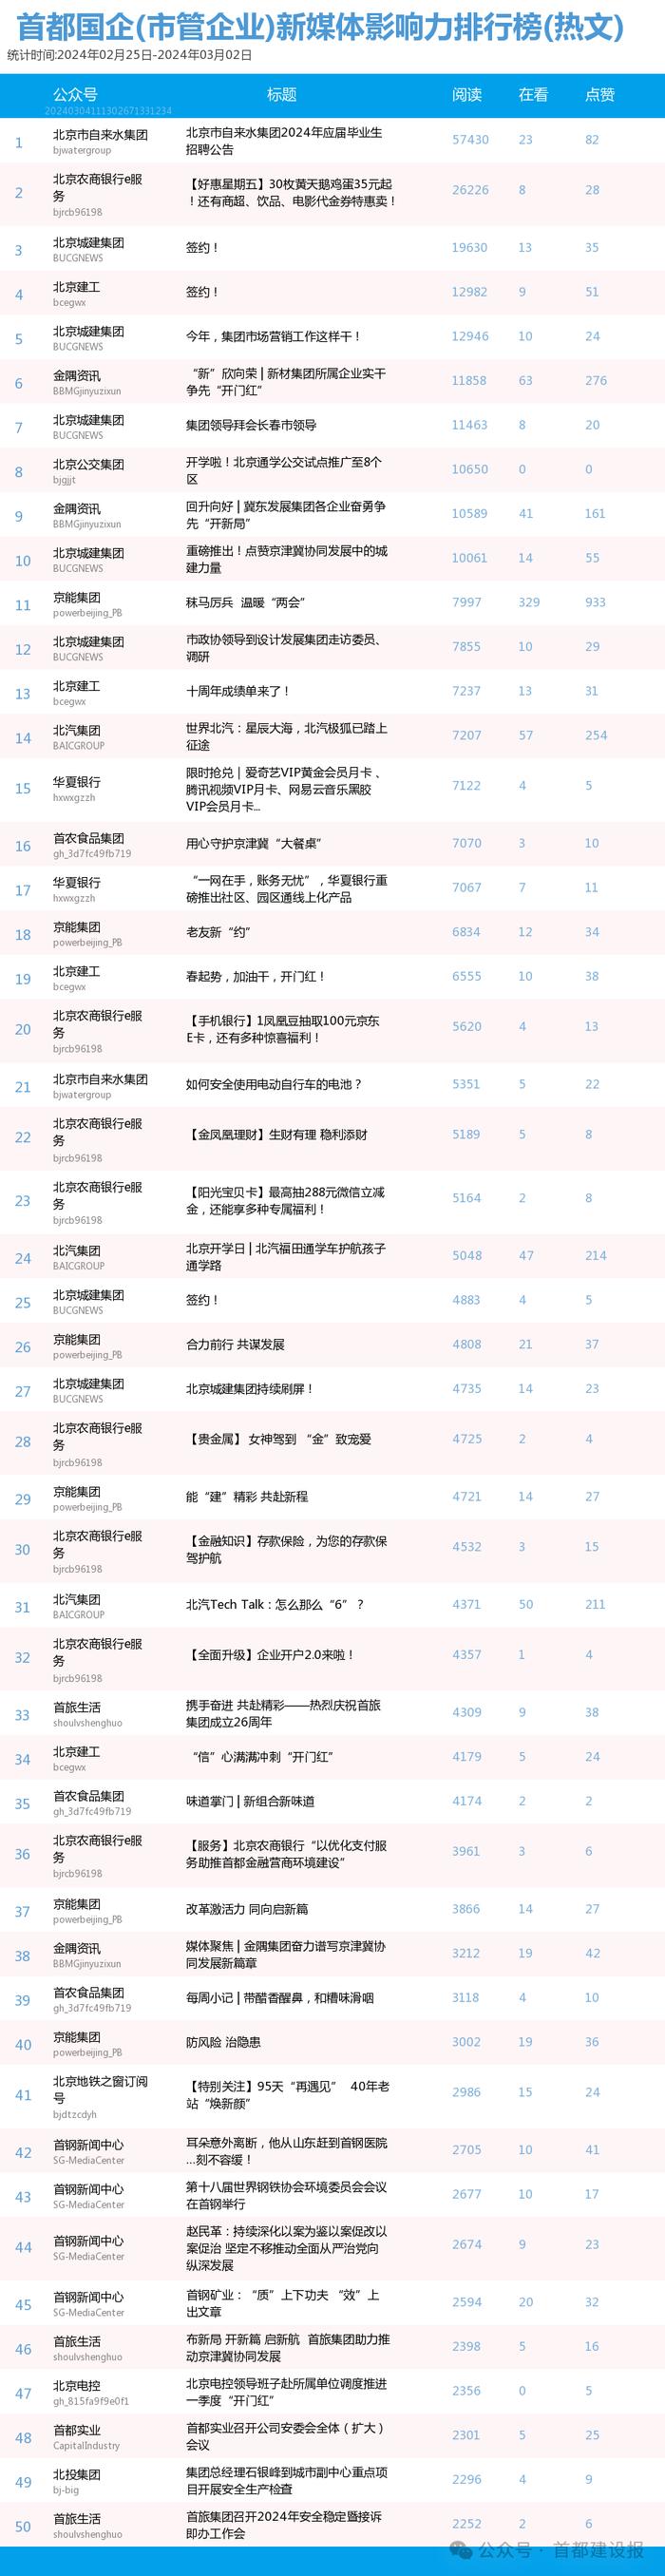 【北京国企新媒体影响力排行榜】2月月榜及周榜(2.25-3.2)第397期